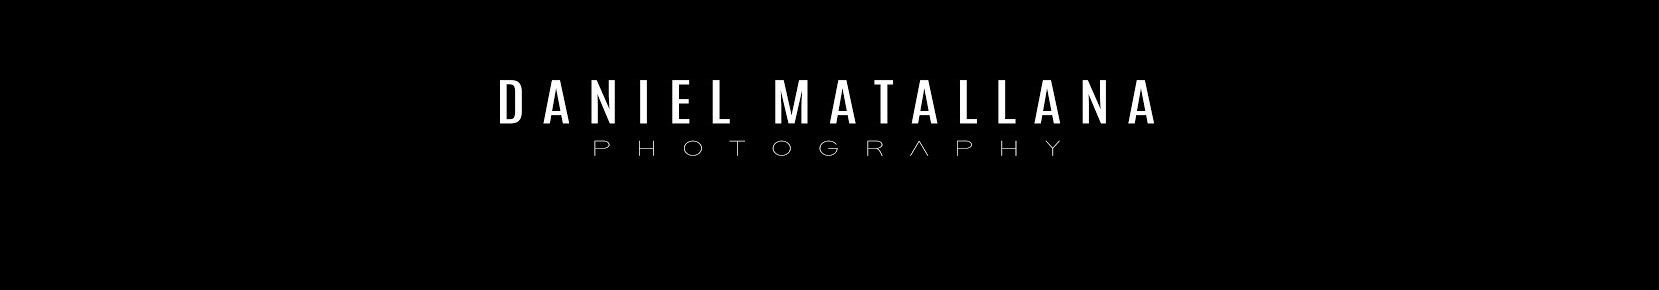 Daniel Matallana's profile banner